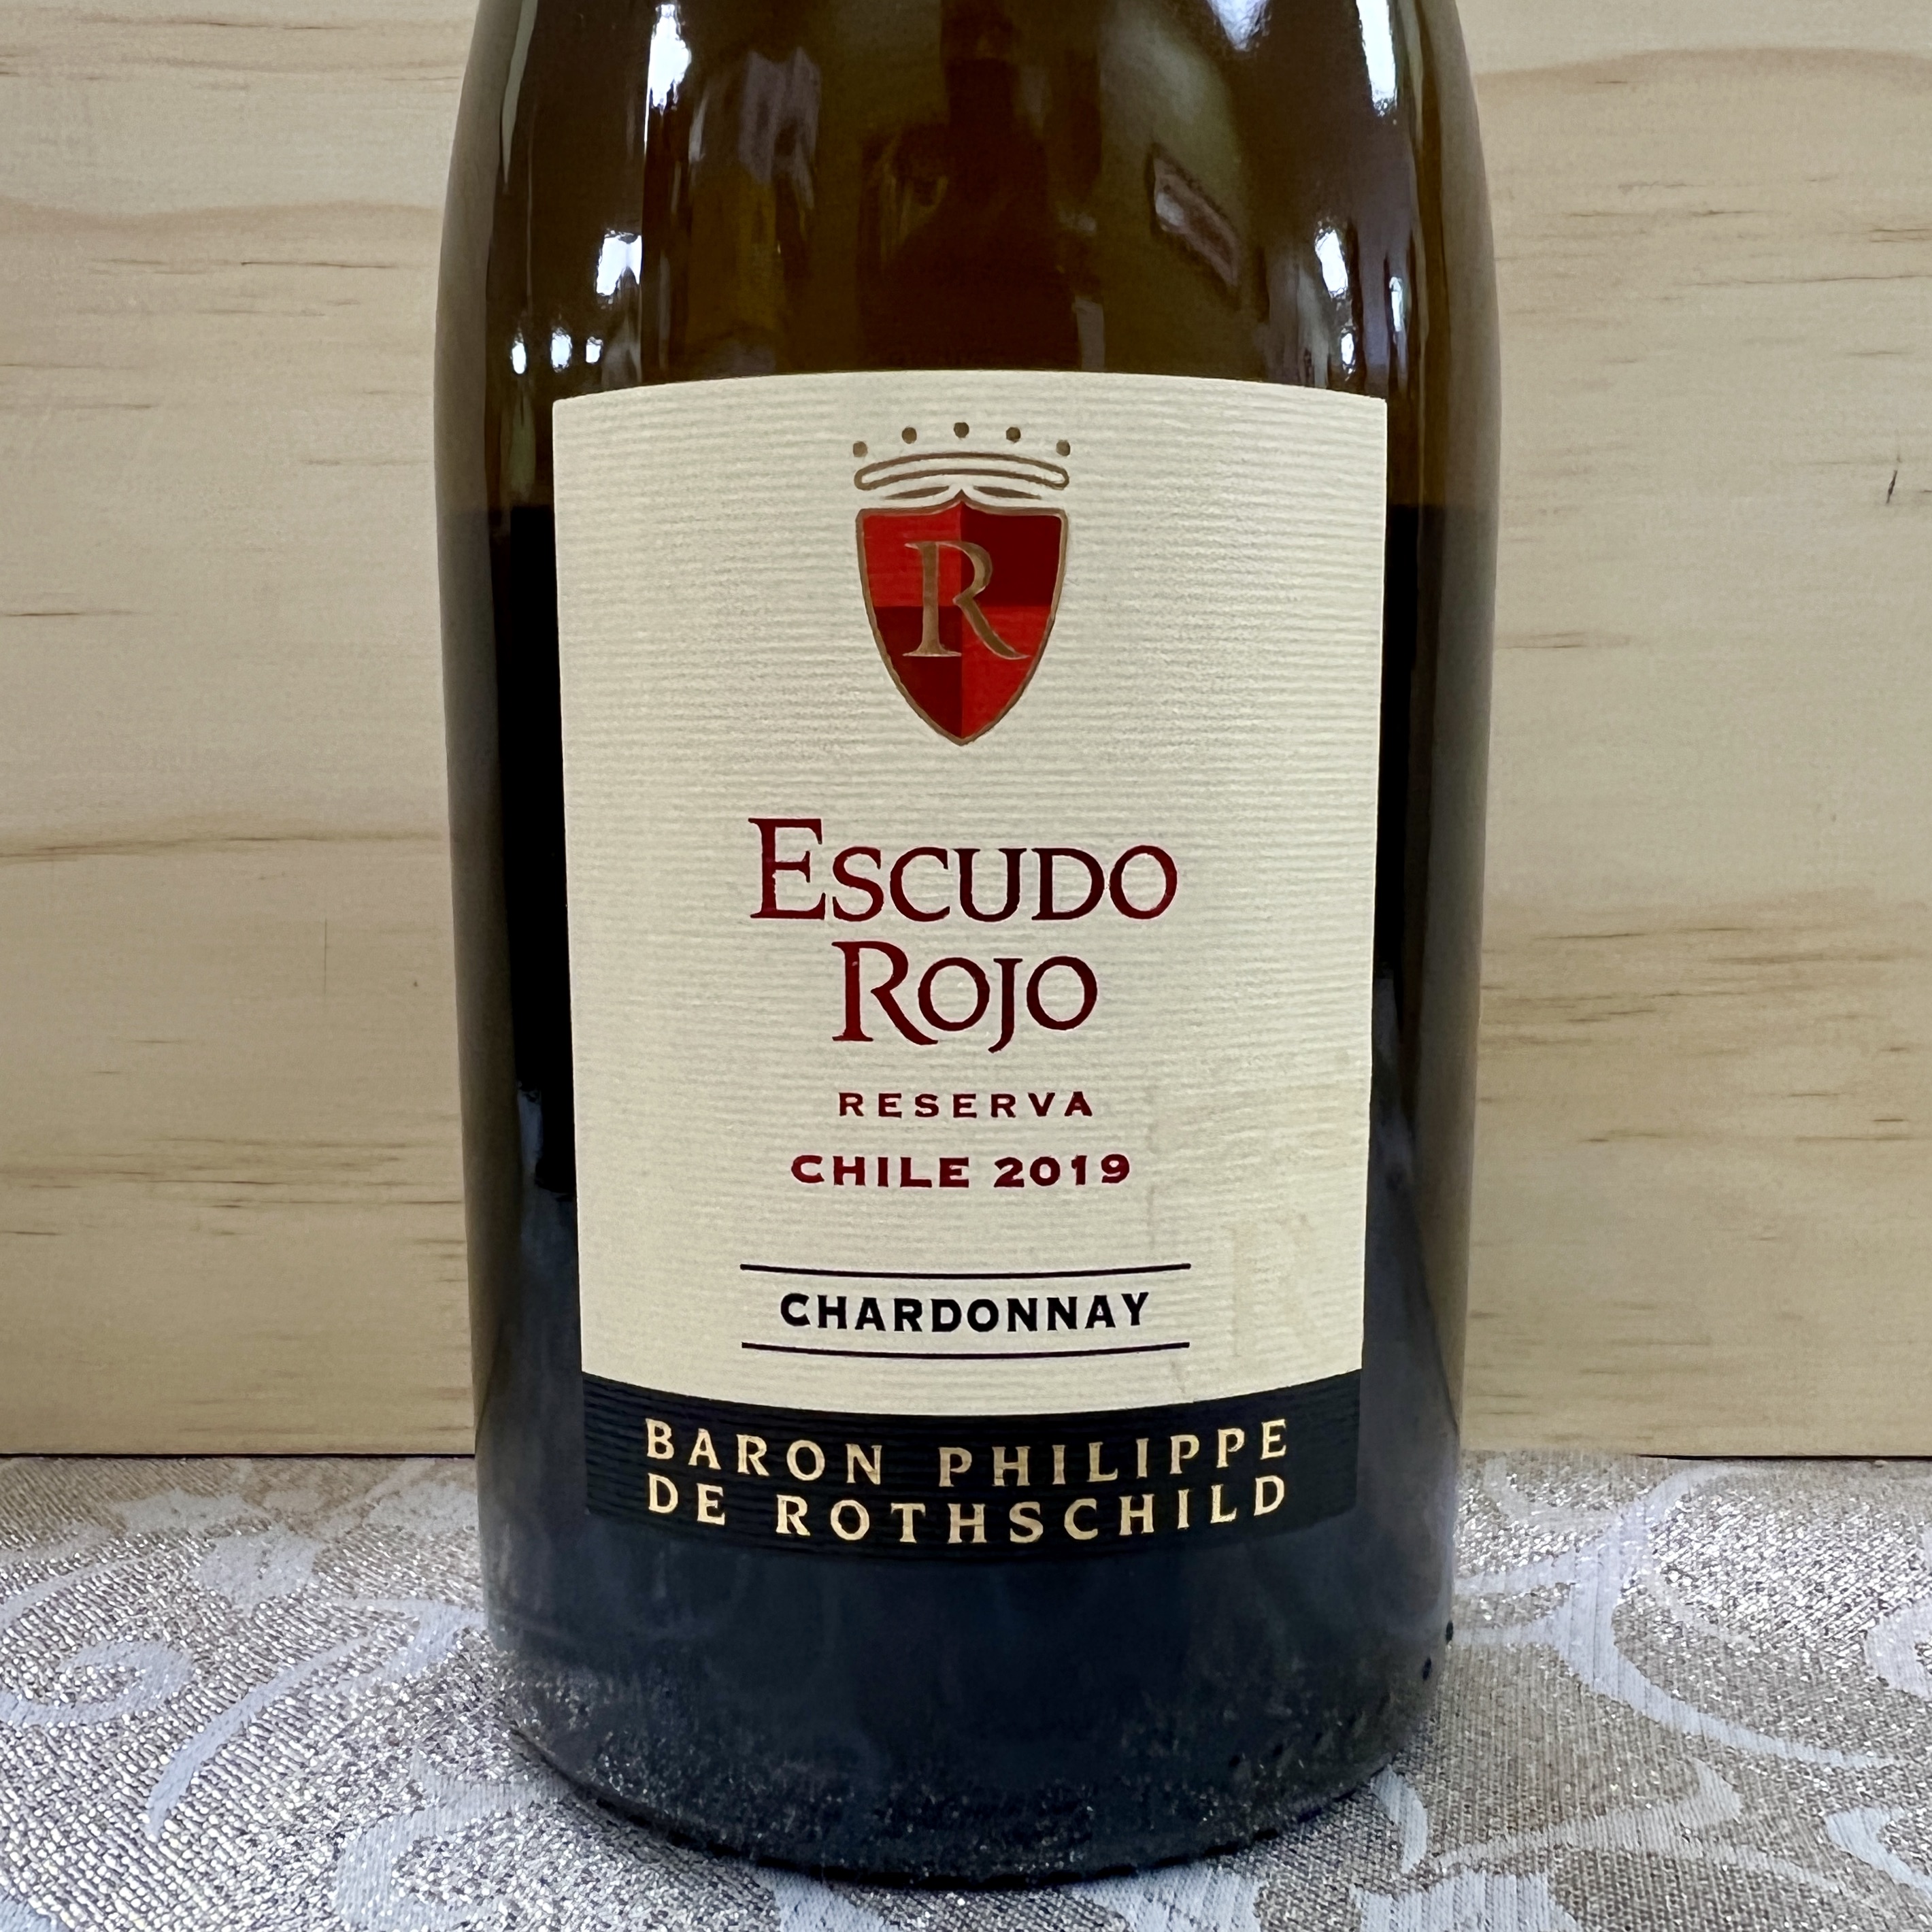 P.Rothschild Escudo Rojo Chardonnay Reserva Chile 2019